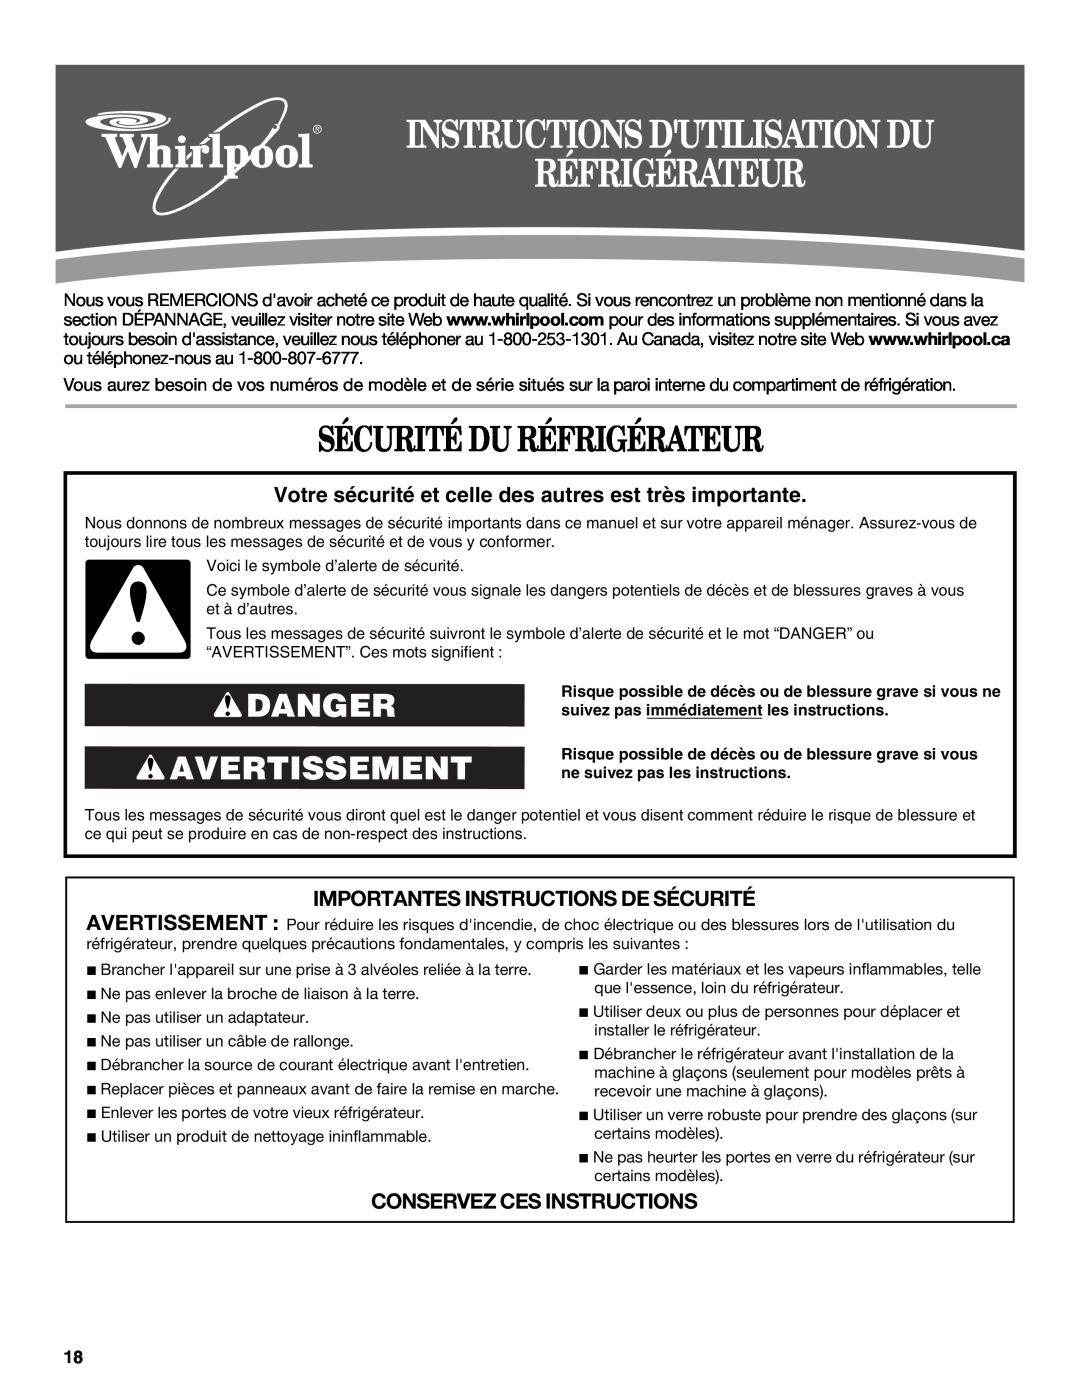 Whirlpool W10314956B Sécurité Du Réfrigérateur, Danger Avertissement, Importantes Instructions De Sécurité 